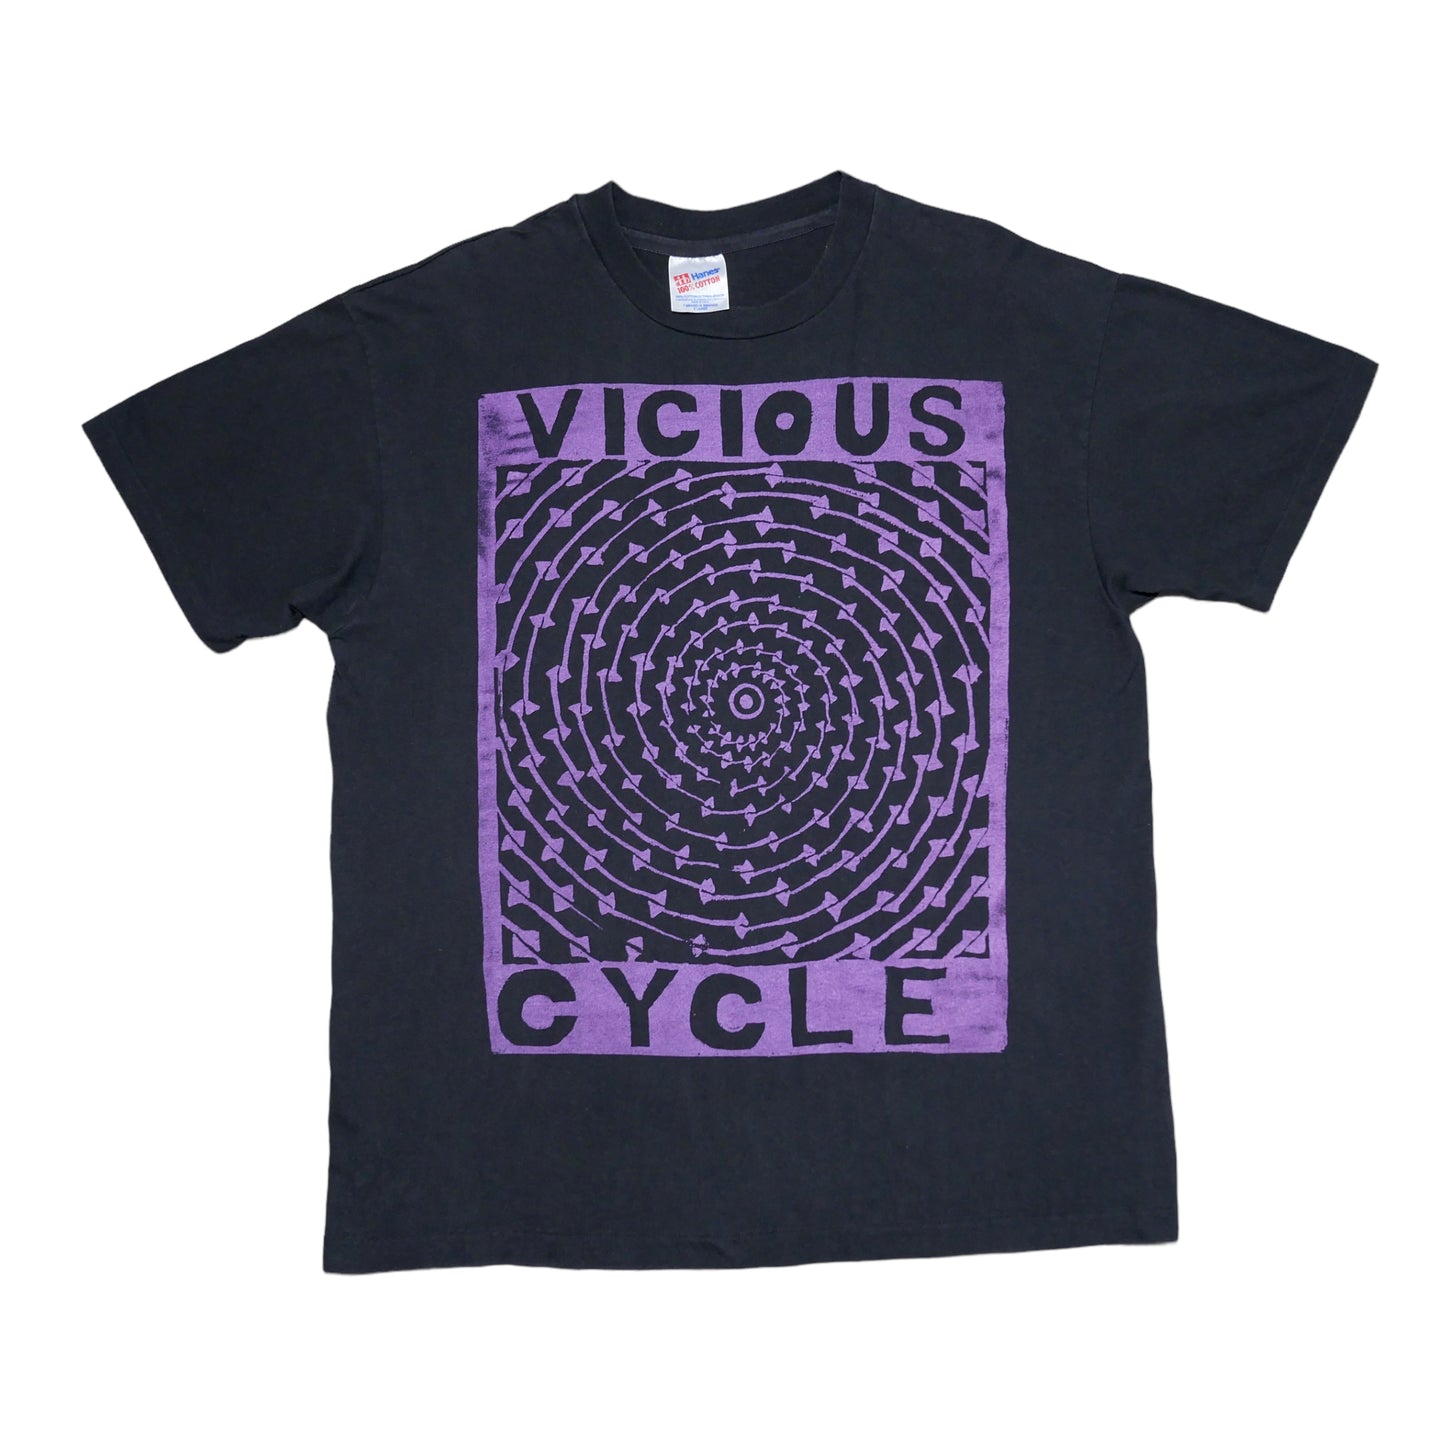 Vicious Cycle Shirt - XL